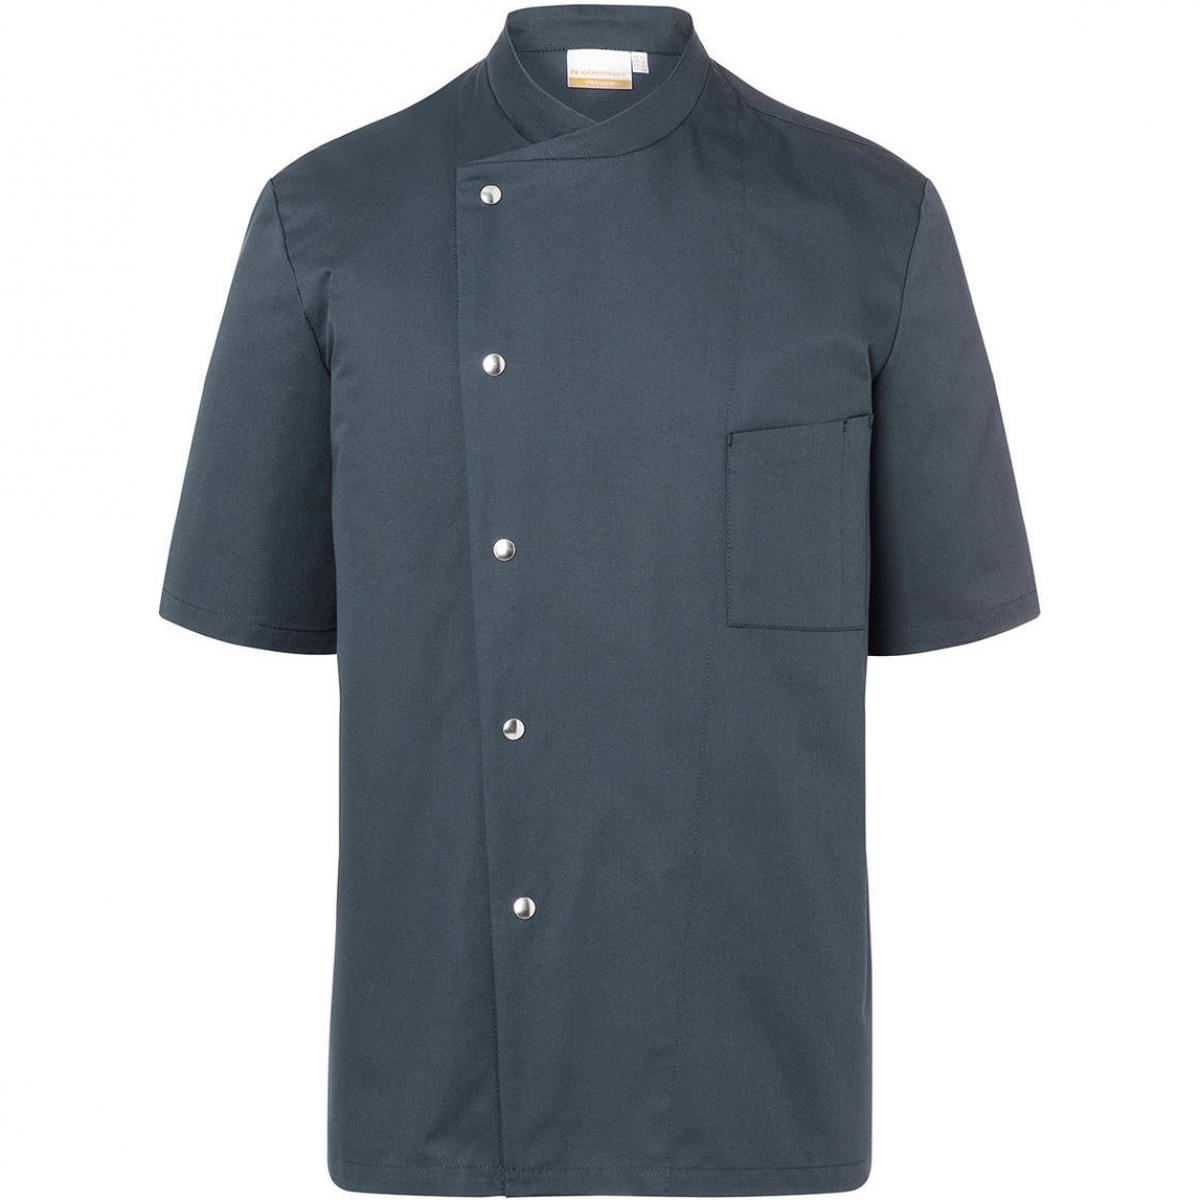 Hersteller: Karlowsky Herstellernummer: JM 15 Artikelbezeichnung: Chef Jacket Gustav Short Sleeve Waschbar bis 95°C Farbe: Anthracite